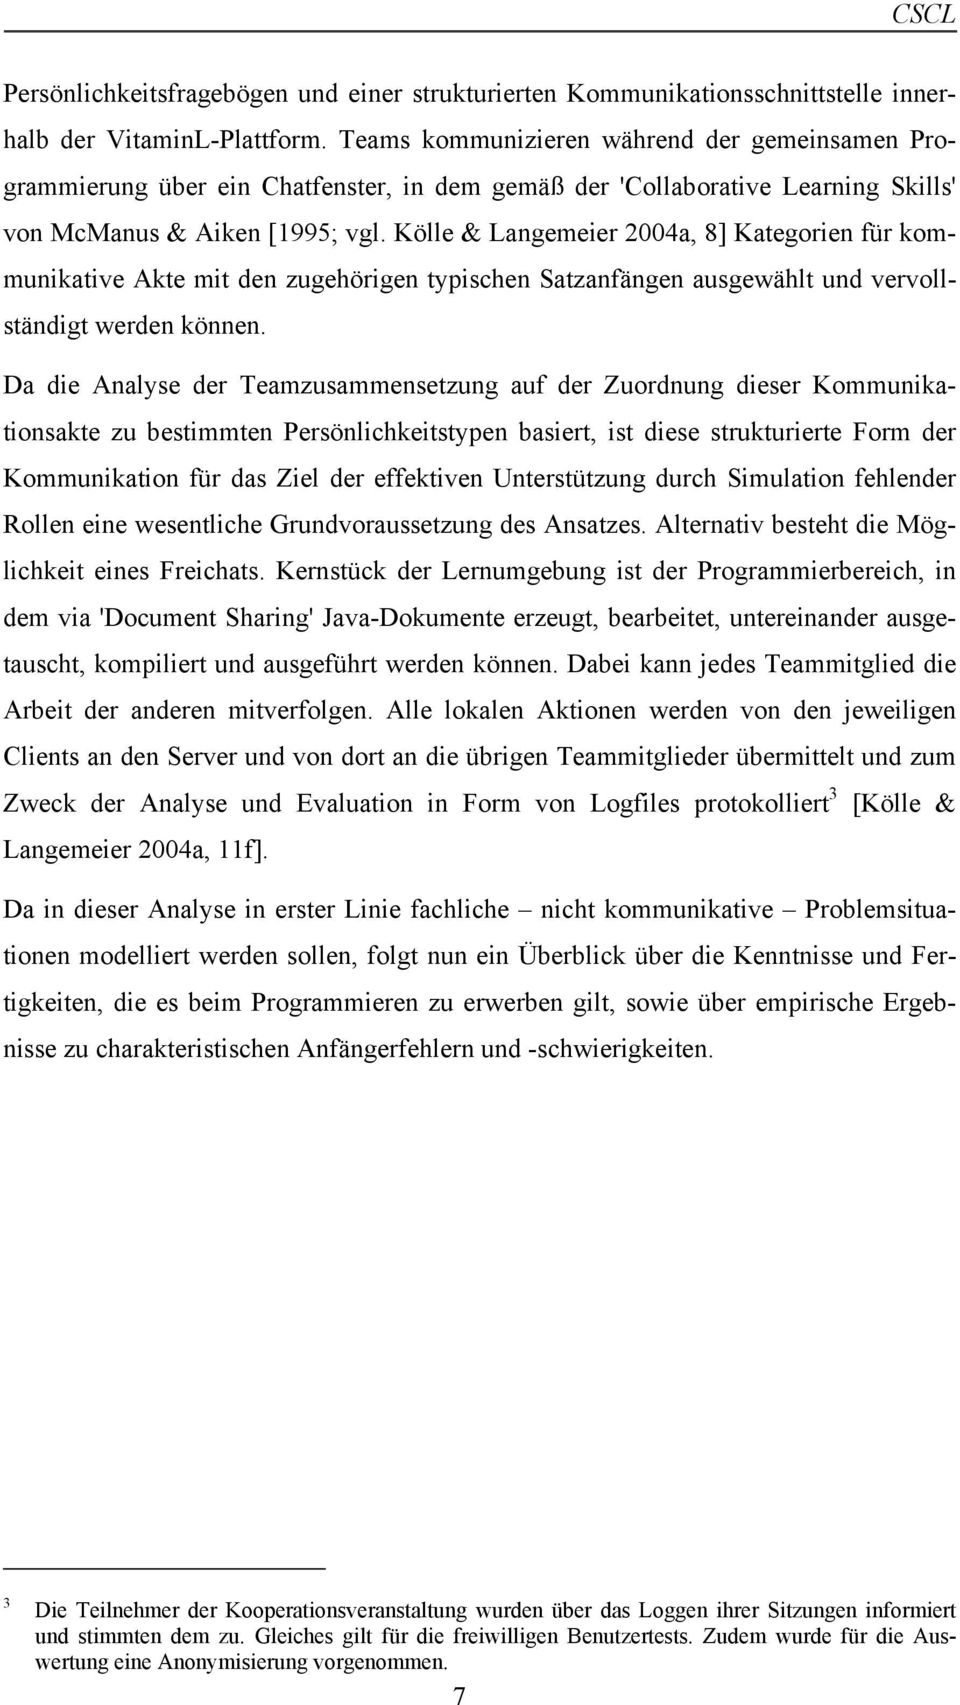 Kölle & Langemeier 2004a, 8] Kategorien für kommunikative Akte mit den zugehörigen typischen Satzanfängen ausgewählt und vervollständigt werden können.